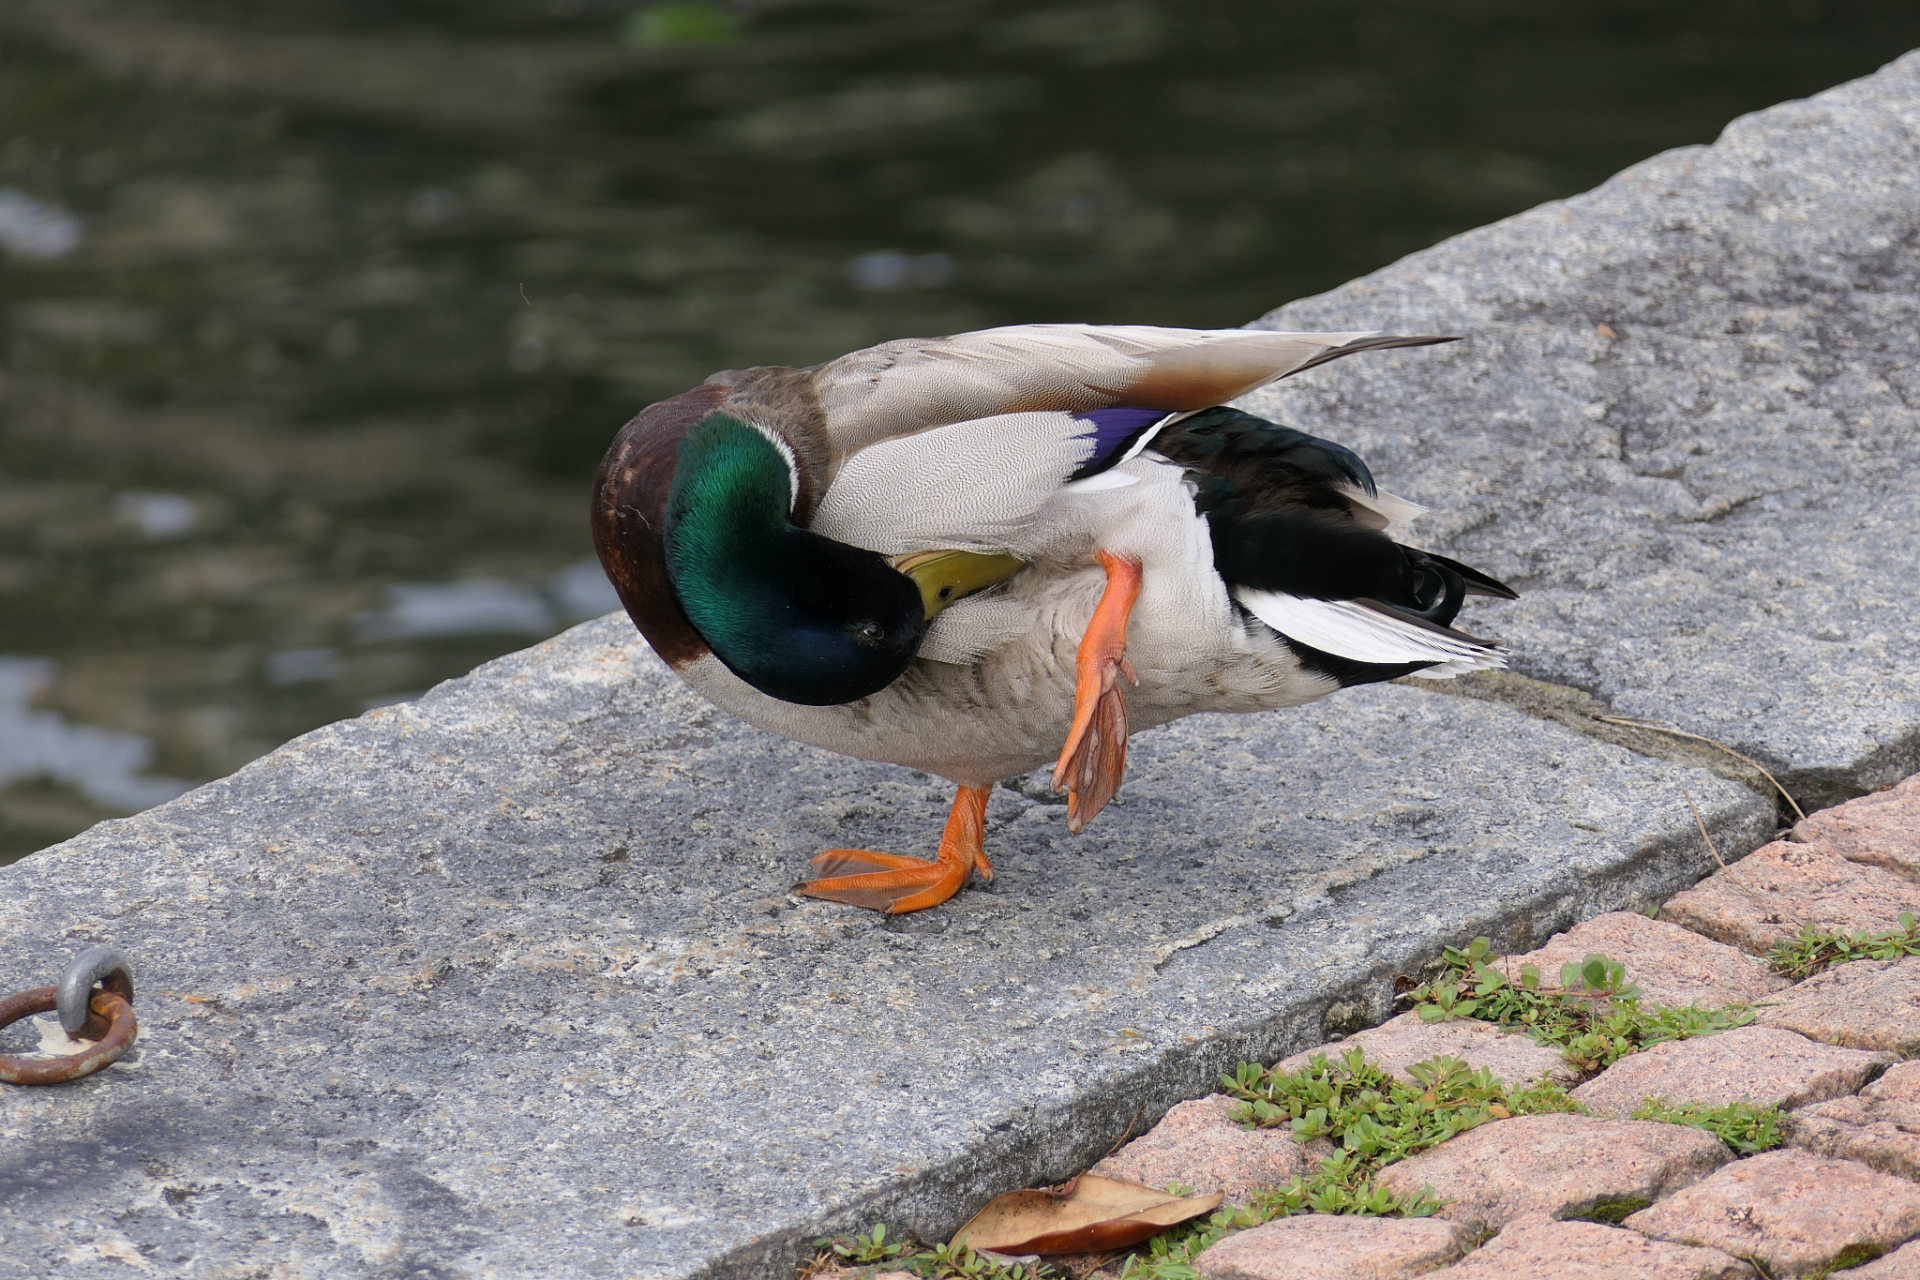 脚蹼:鸭子的脚有脚蹼,呈橙黄色或粉红色,面积较大且有一定厚度